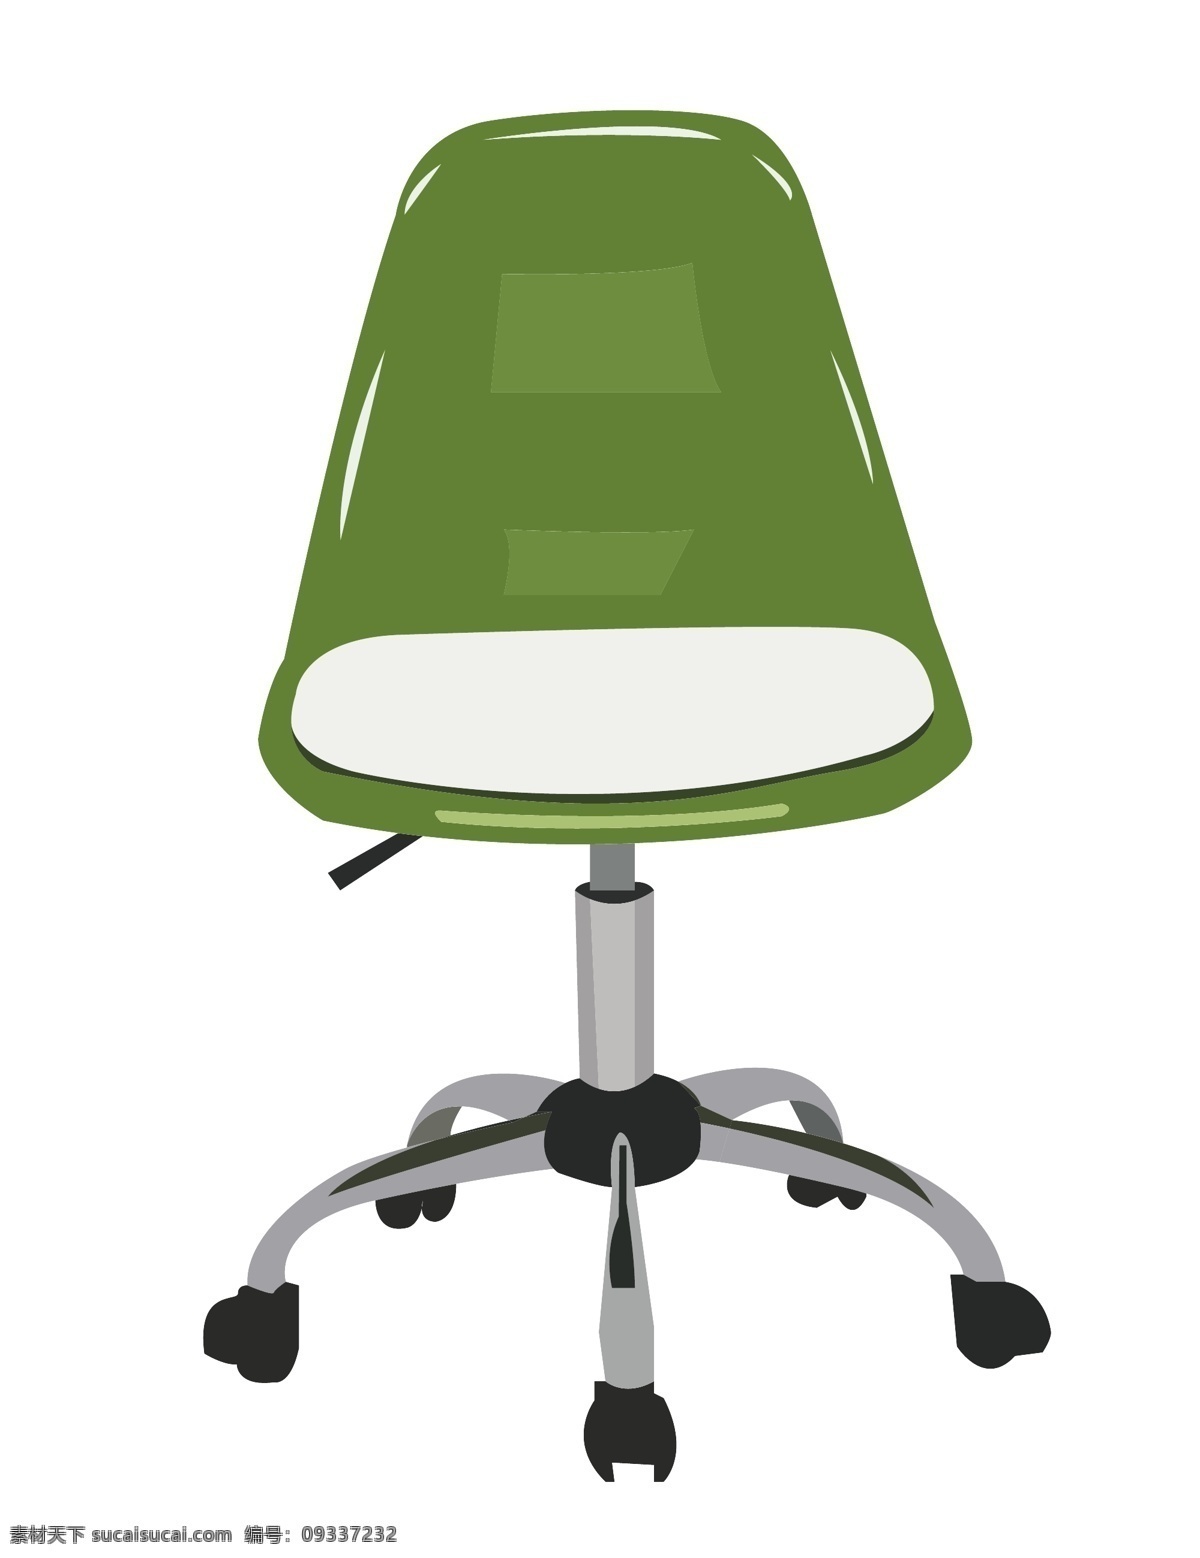 绿色 椅子 装饰 插画 绿色的椅子 漂亮的椅子 创意椅子 立体椅子 精美椅子 椅子装饰 椅子插画 家具椅子